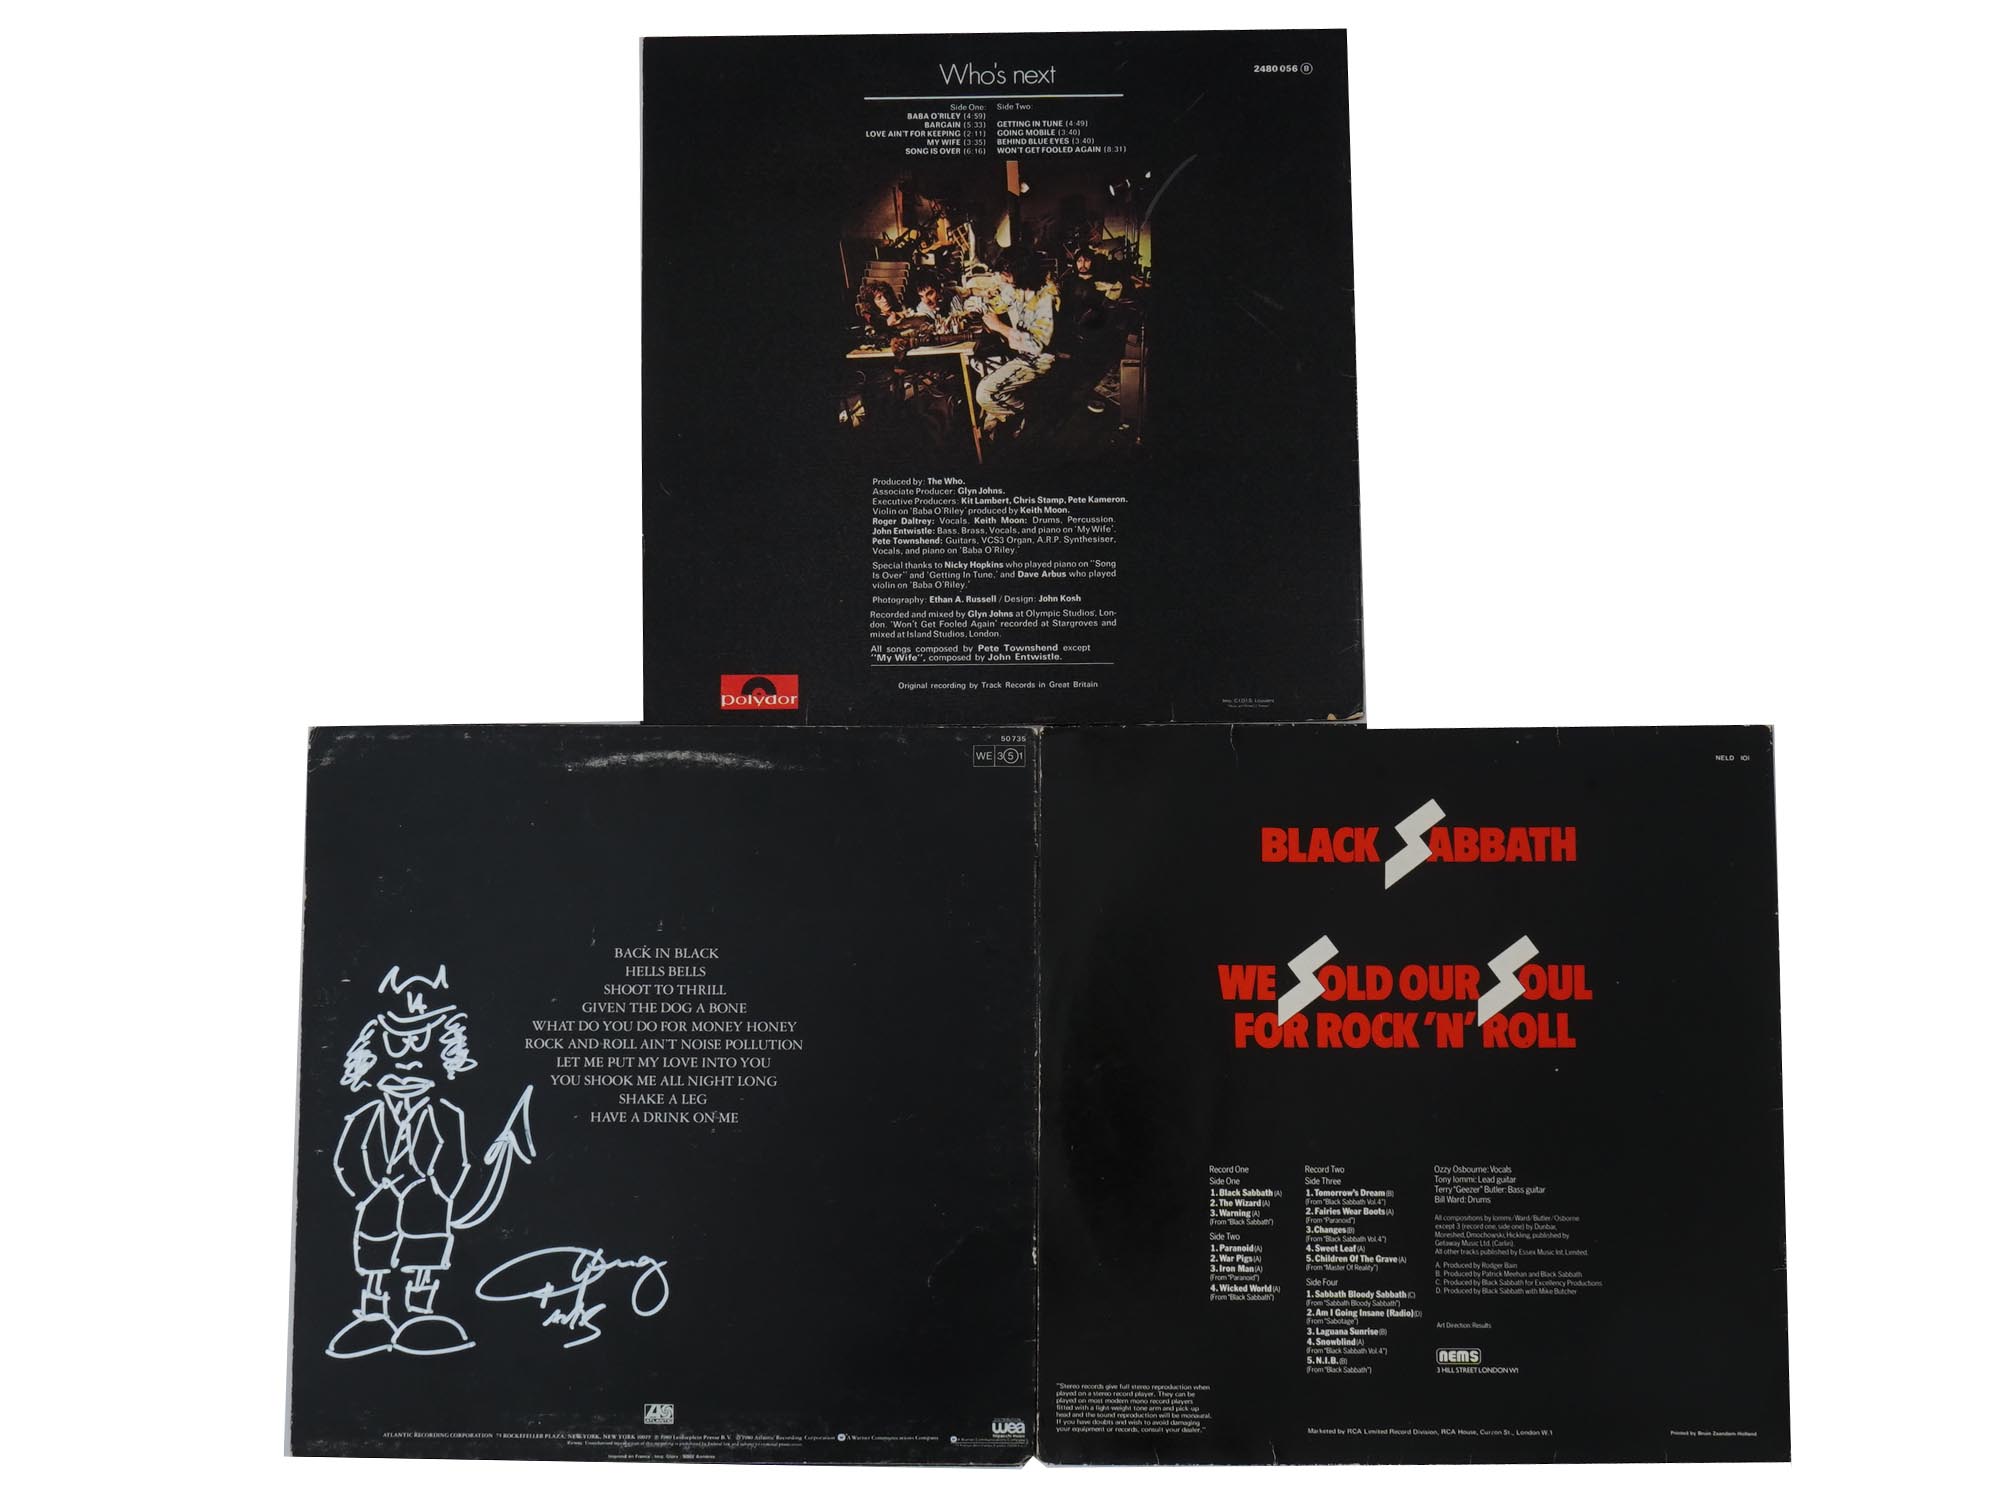 AUTOGRAPHED LP ALBUMS AC/DC BLACK SABBATH THE WHO PIC-2